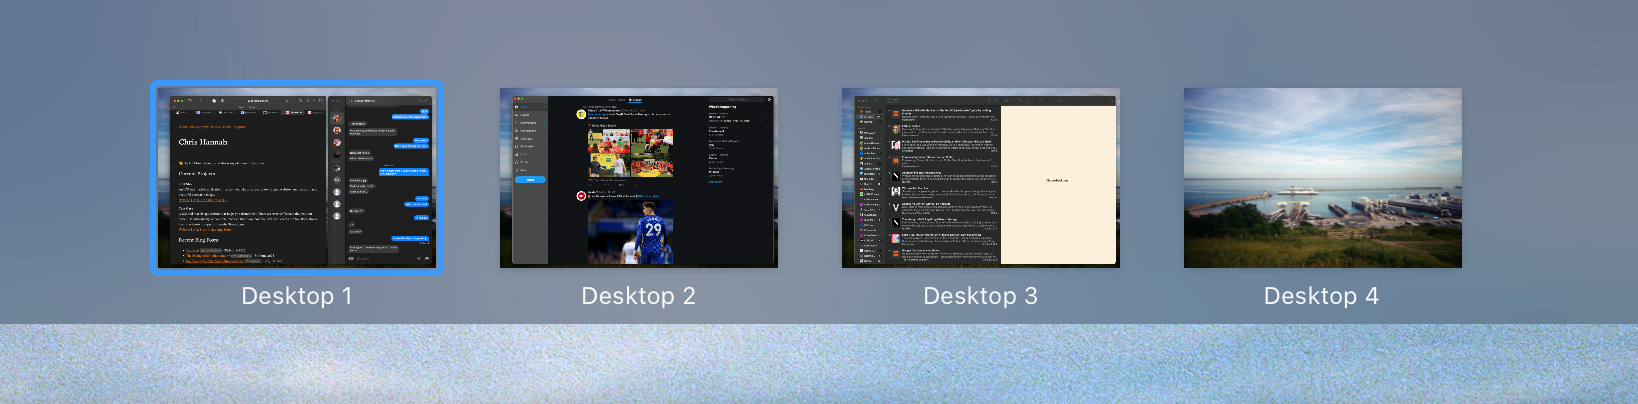 Multiple Desktops on macOS using Spaces